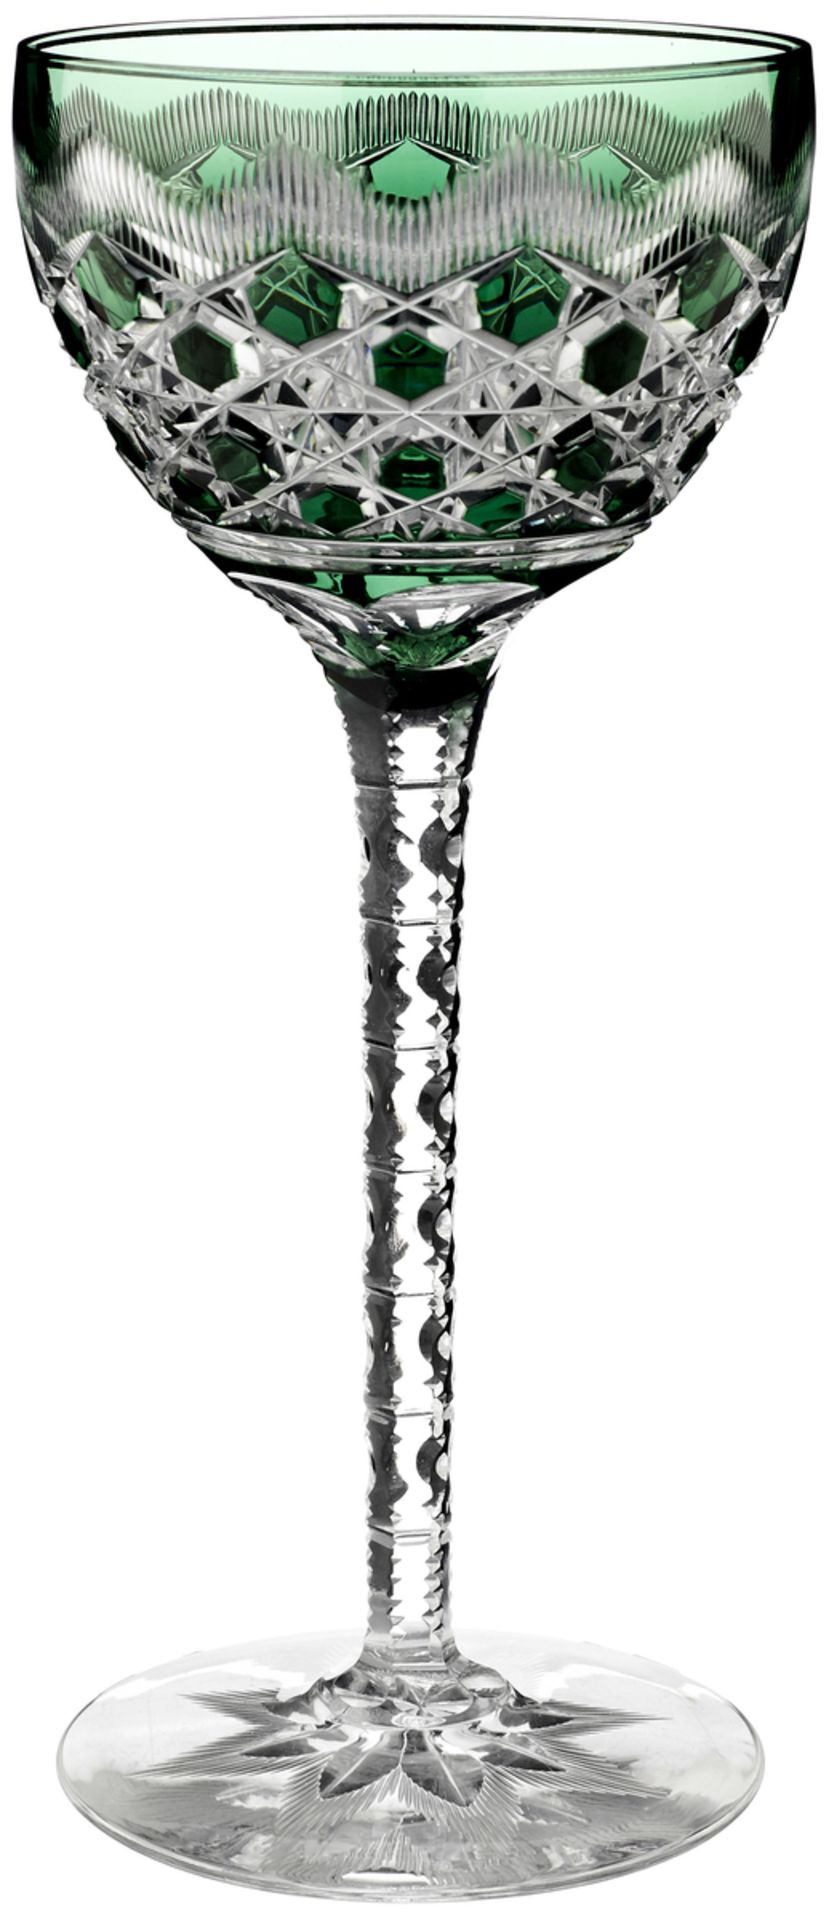 12 RieslinggläserAnfang 20. Jh. Farbloses Kristallglas mit verschieden farbigem Überfang und reichem - Bild 3 aus 6